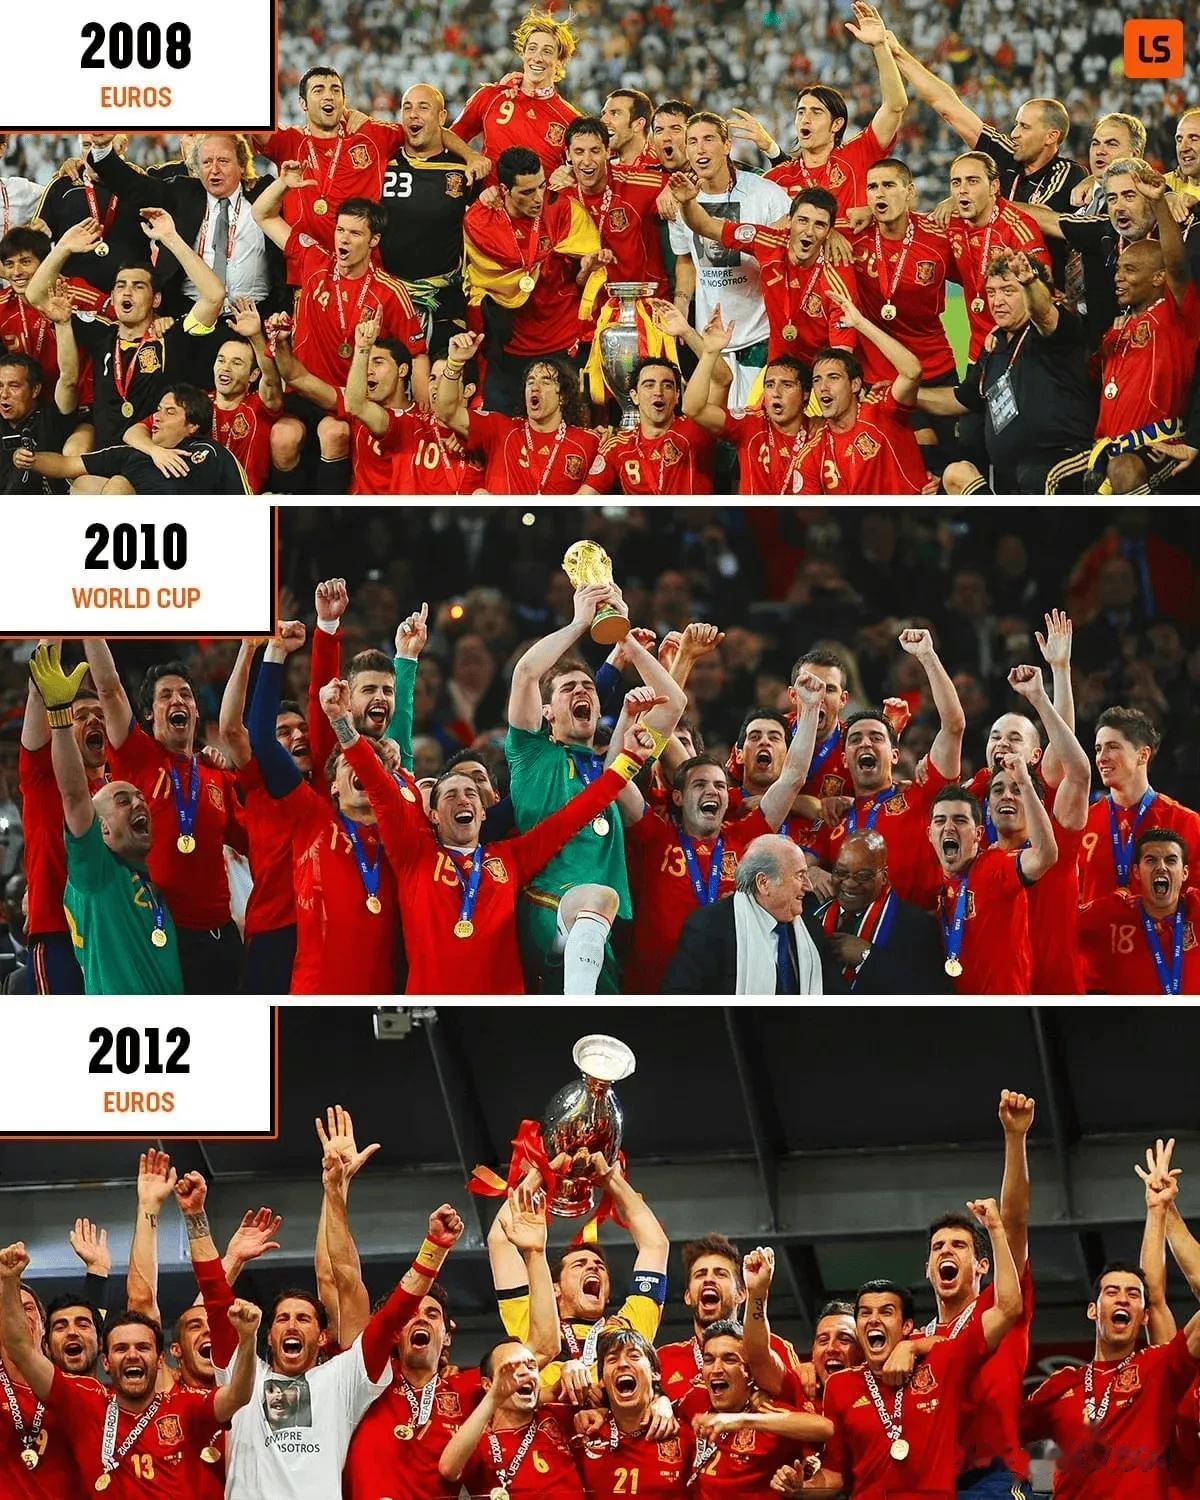 哪个难度更大？皇马欧冠三连冠，西班牙洲际大赛三连冠
皇马欧冠三连冠：欧冠改制之后